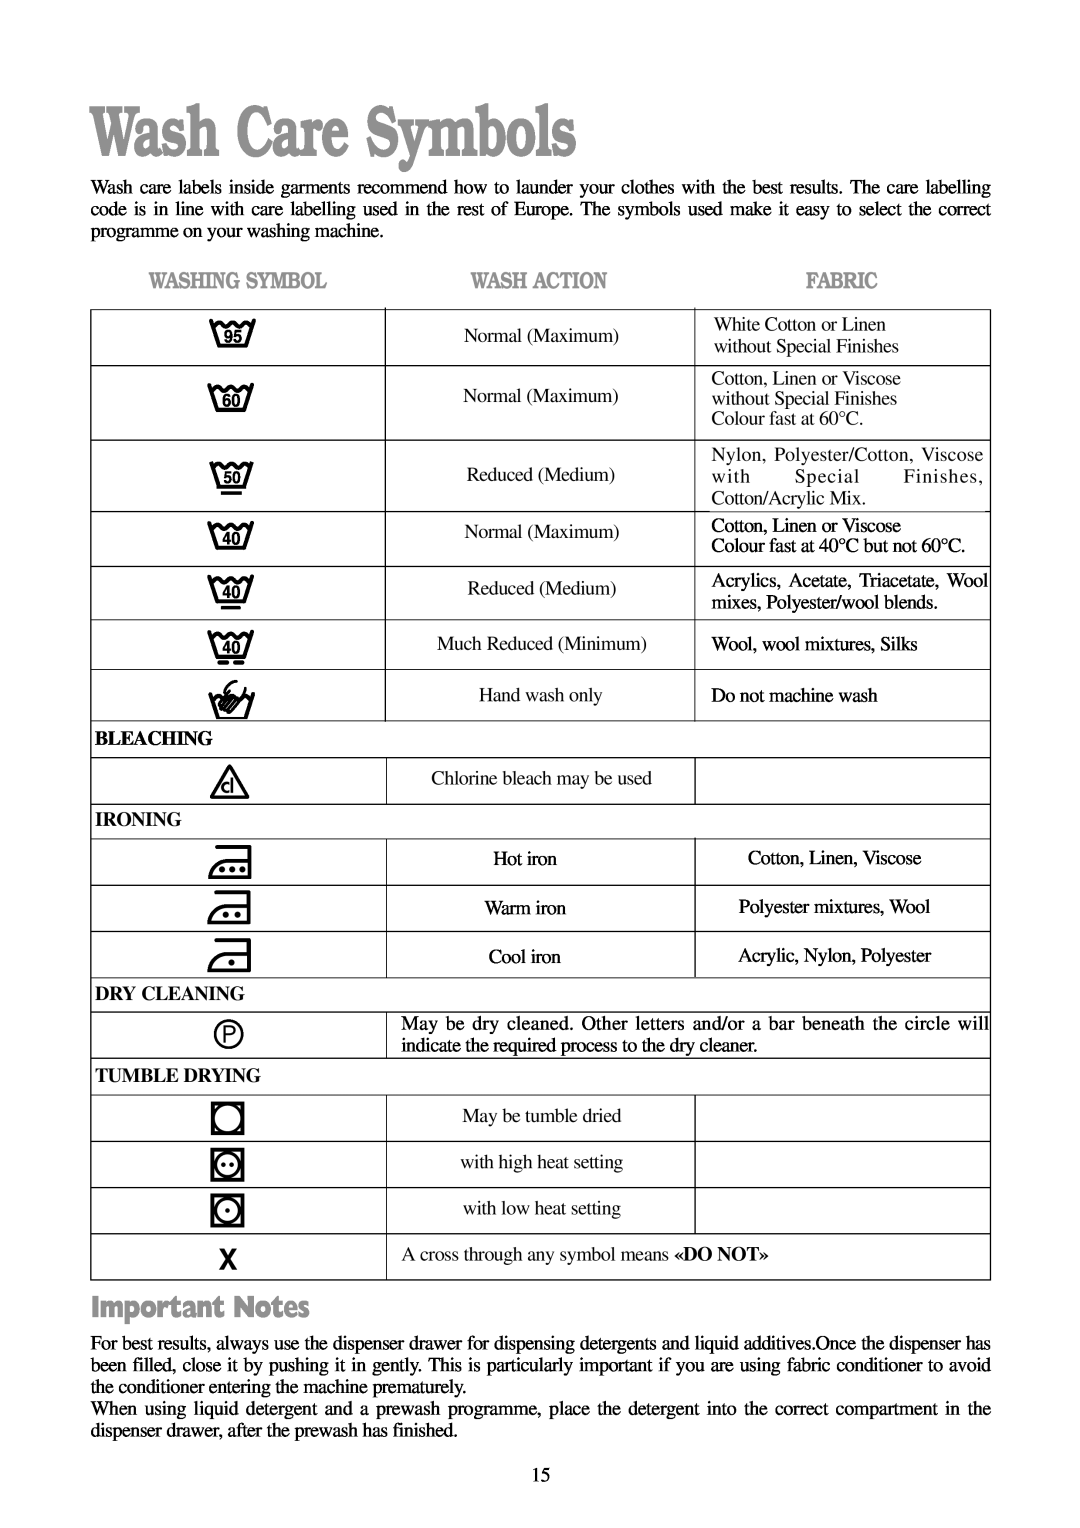 Tricity Bendix BIW 102 Wash Care Symbols, Important Notes, Washing Symbol, Wash Action, Fabric, Bleaching, Ironing 